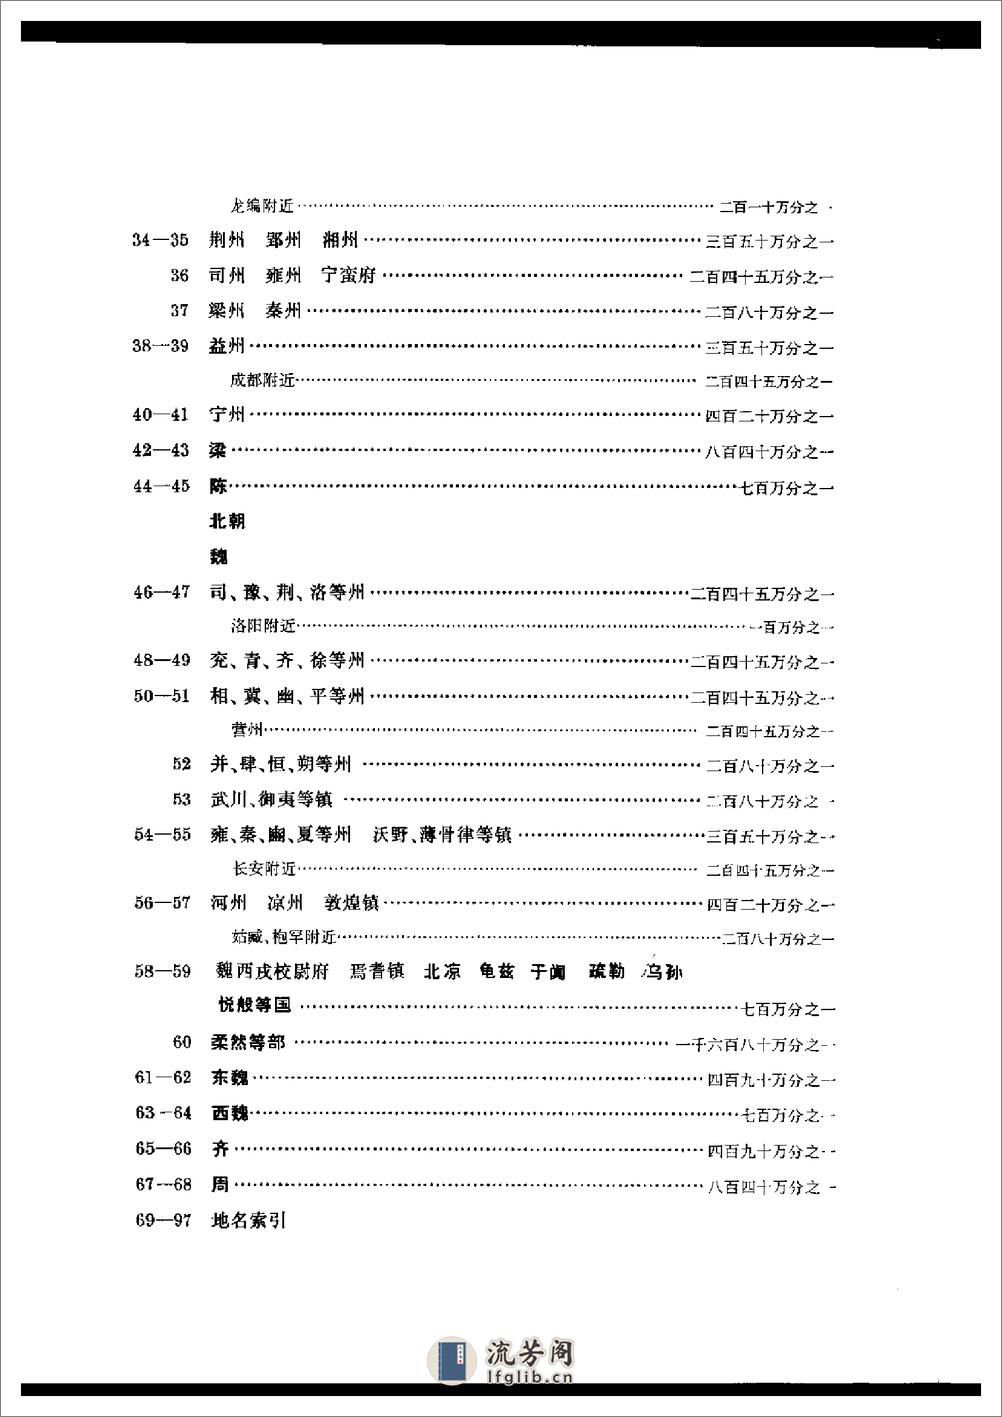 中国历史地图集_第四册(南北朝) - 第9页预览图